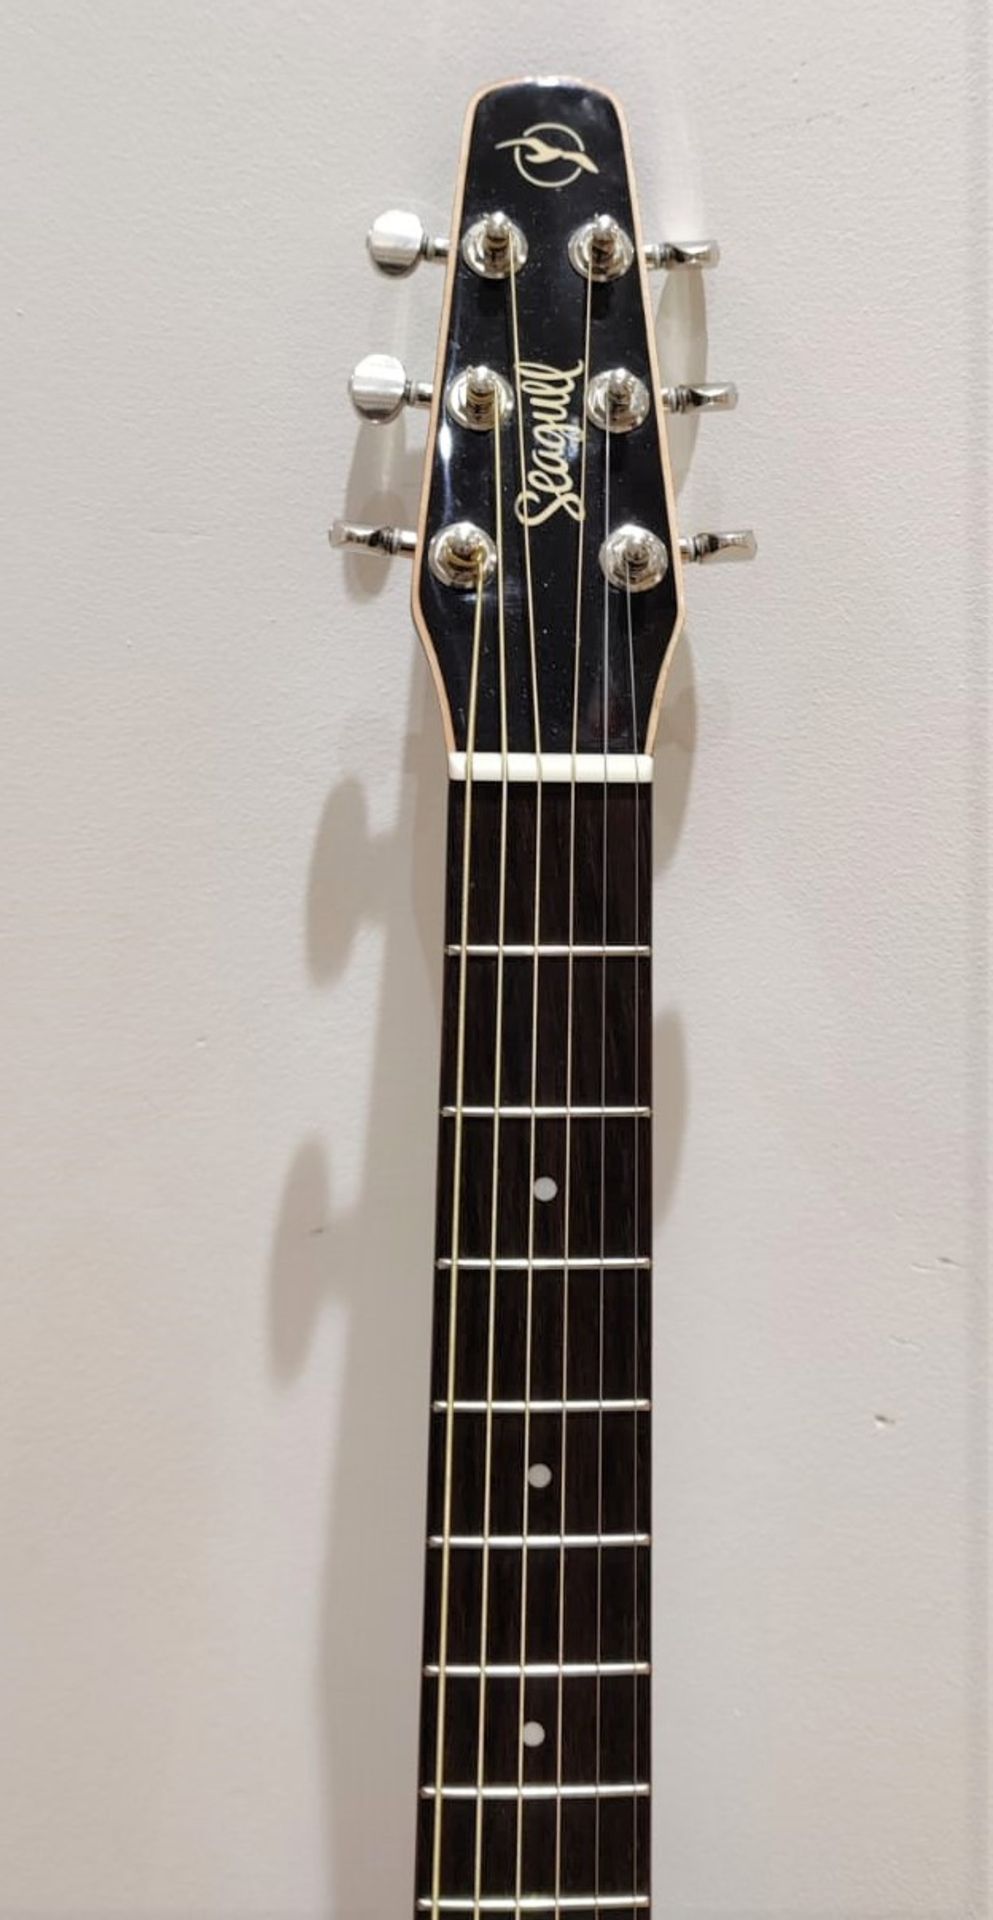 1 x Seagull S6 Original Slim Burnt Umber Dreadnaught Electro Acoustic Guitar - RRP £600 - Very - Image 2 of 14